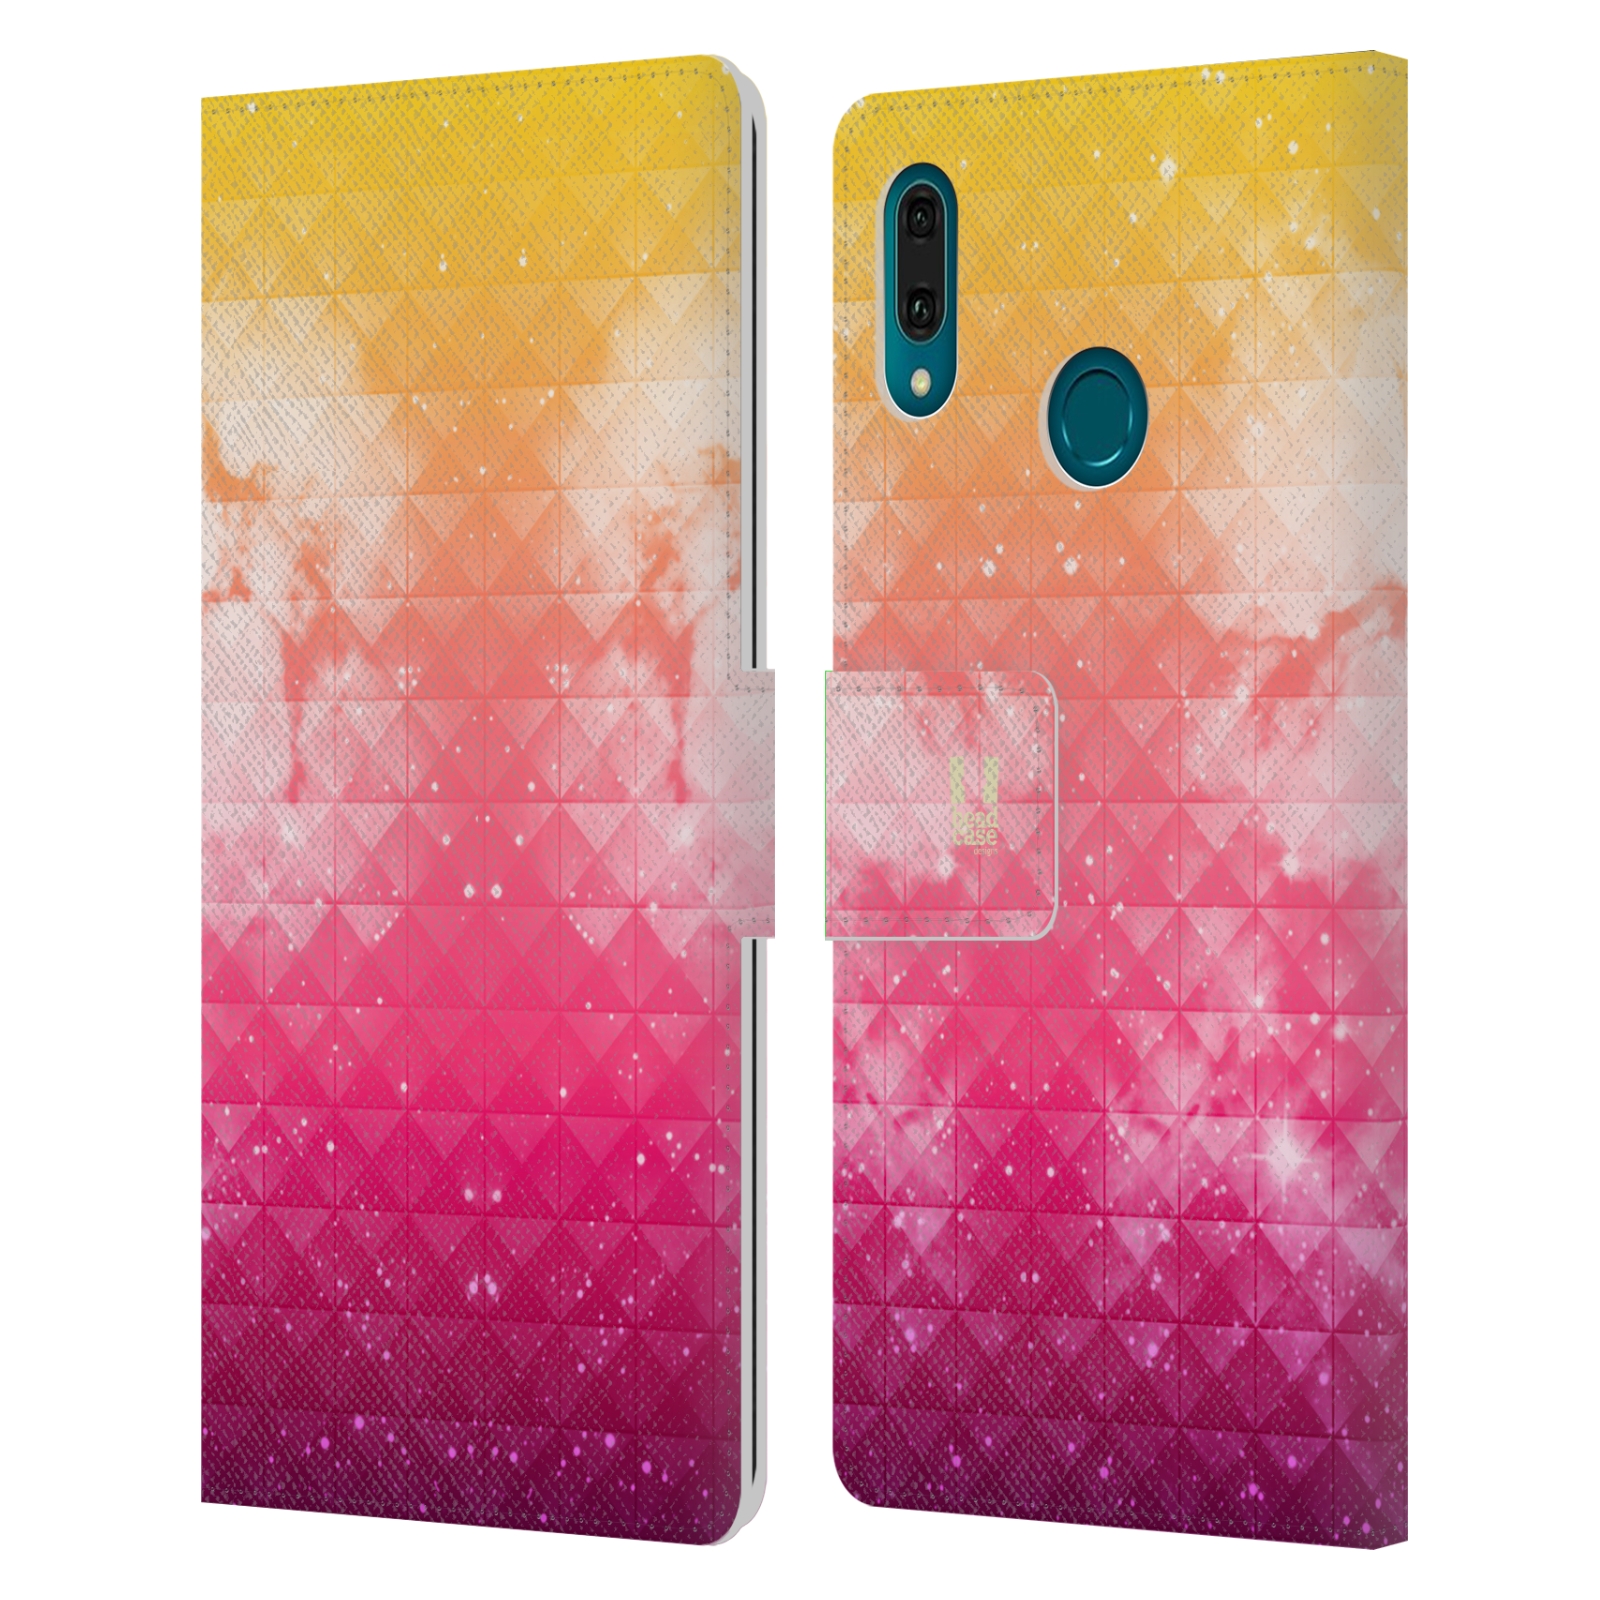 Pouzdro na mobil Huawei Y9 2019 barevná vesmírná mlhovina oranžová a růžová